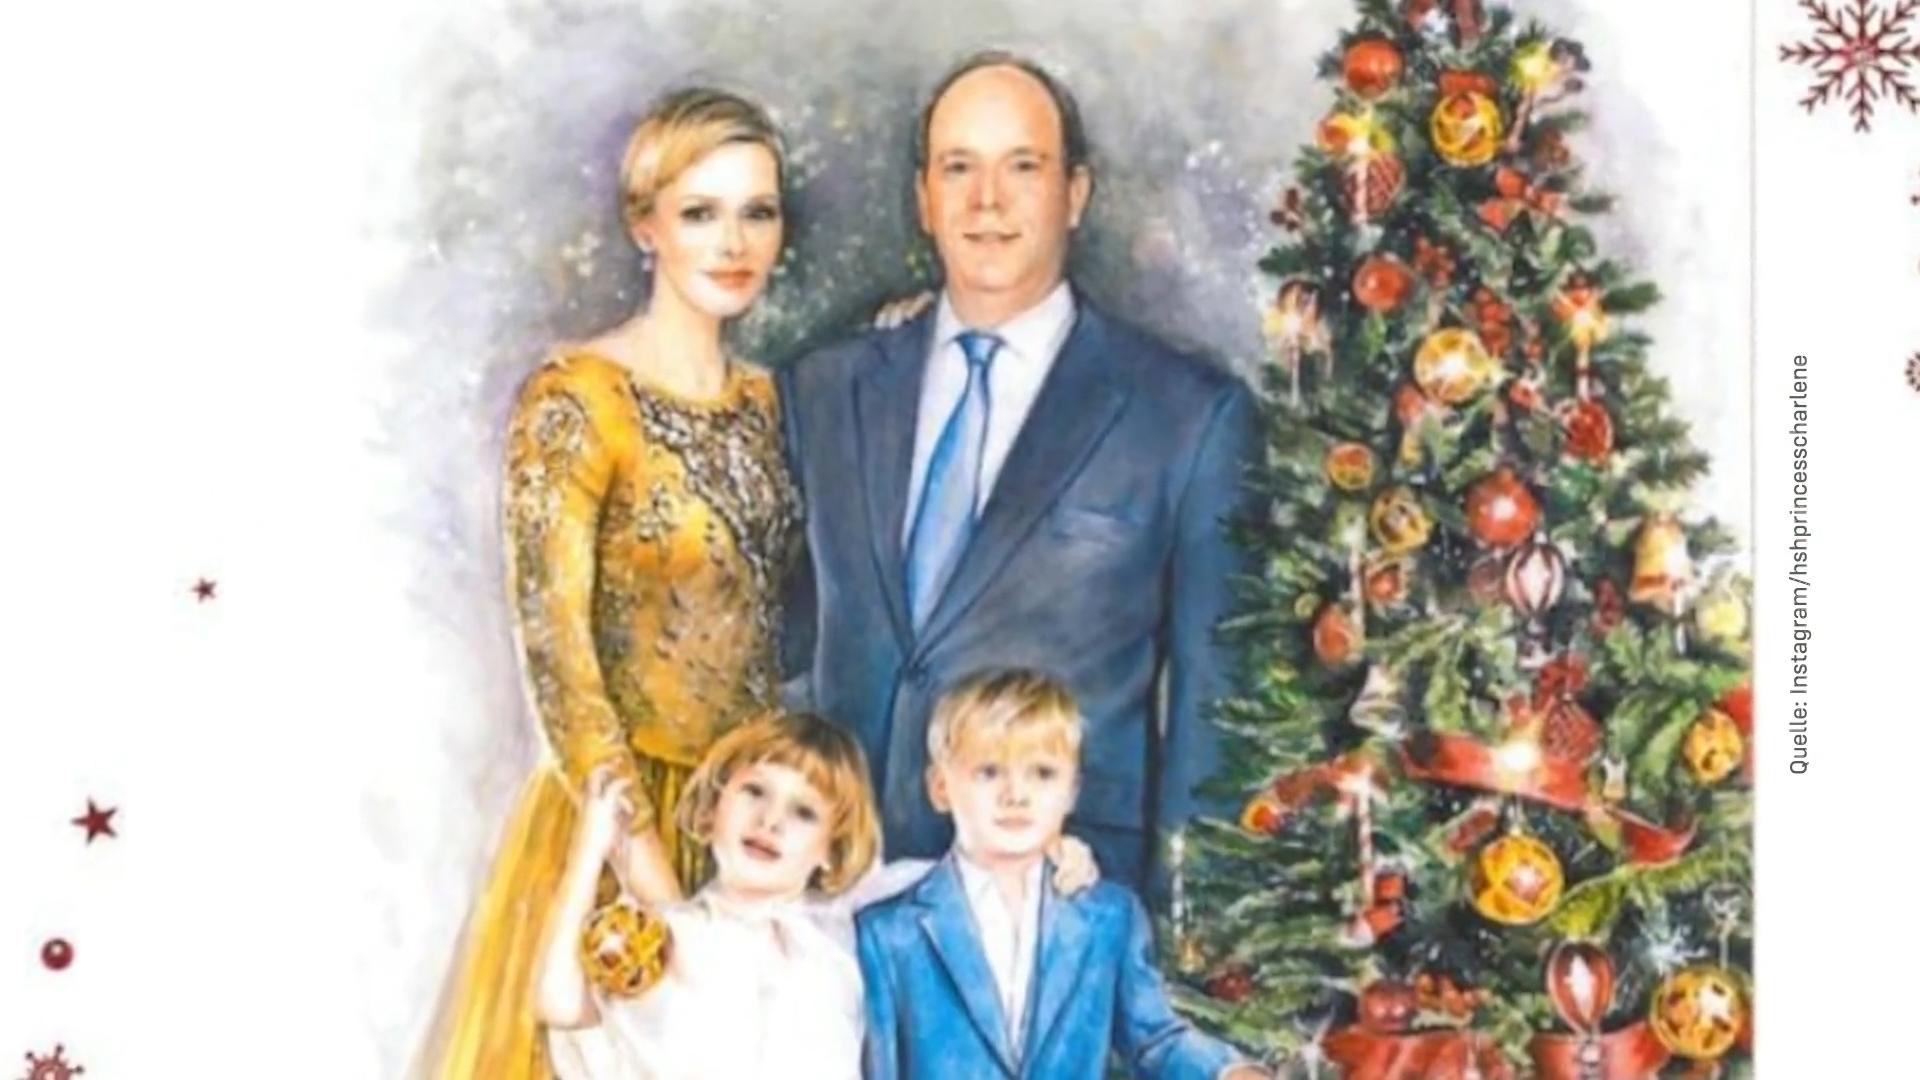 Fürstin Charlène veröffentlicht besondere Weihnachtskarte Es war still geworden um sie